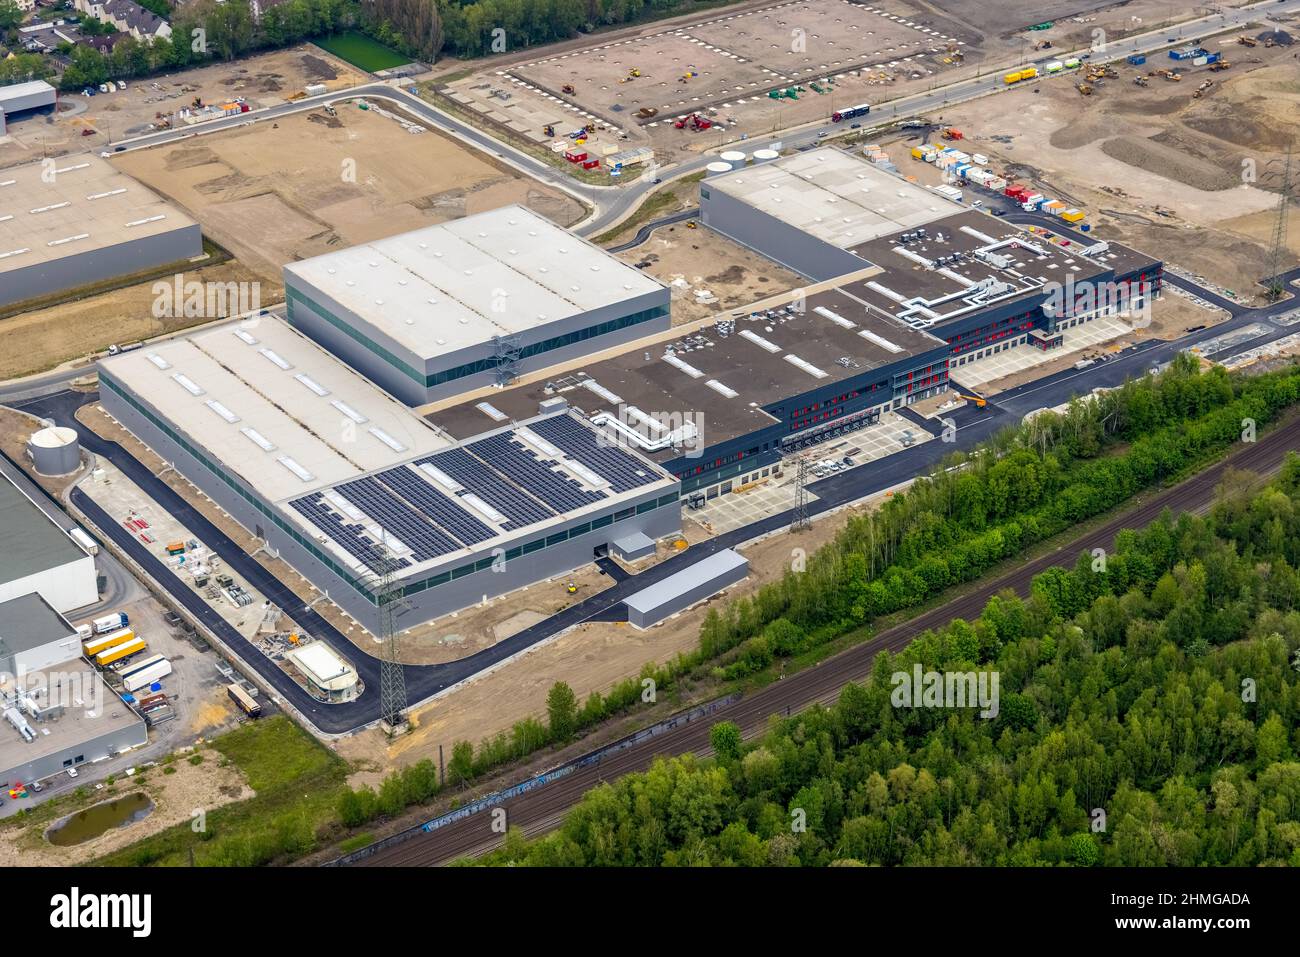 Aerial view, formerly Schalker Verein, construction site at Europastraße industrial estate, Gelsenkirchen-Bulmke-Hüllen, Gelsenkirchen, Ruhr area, Nor Stock Photo